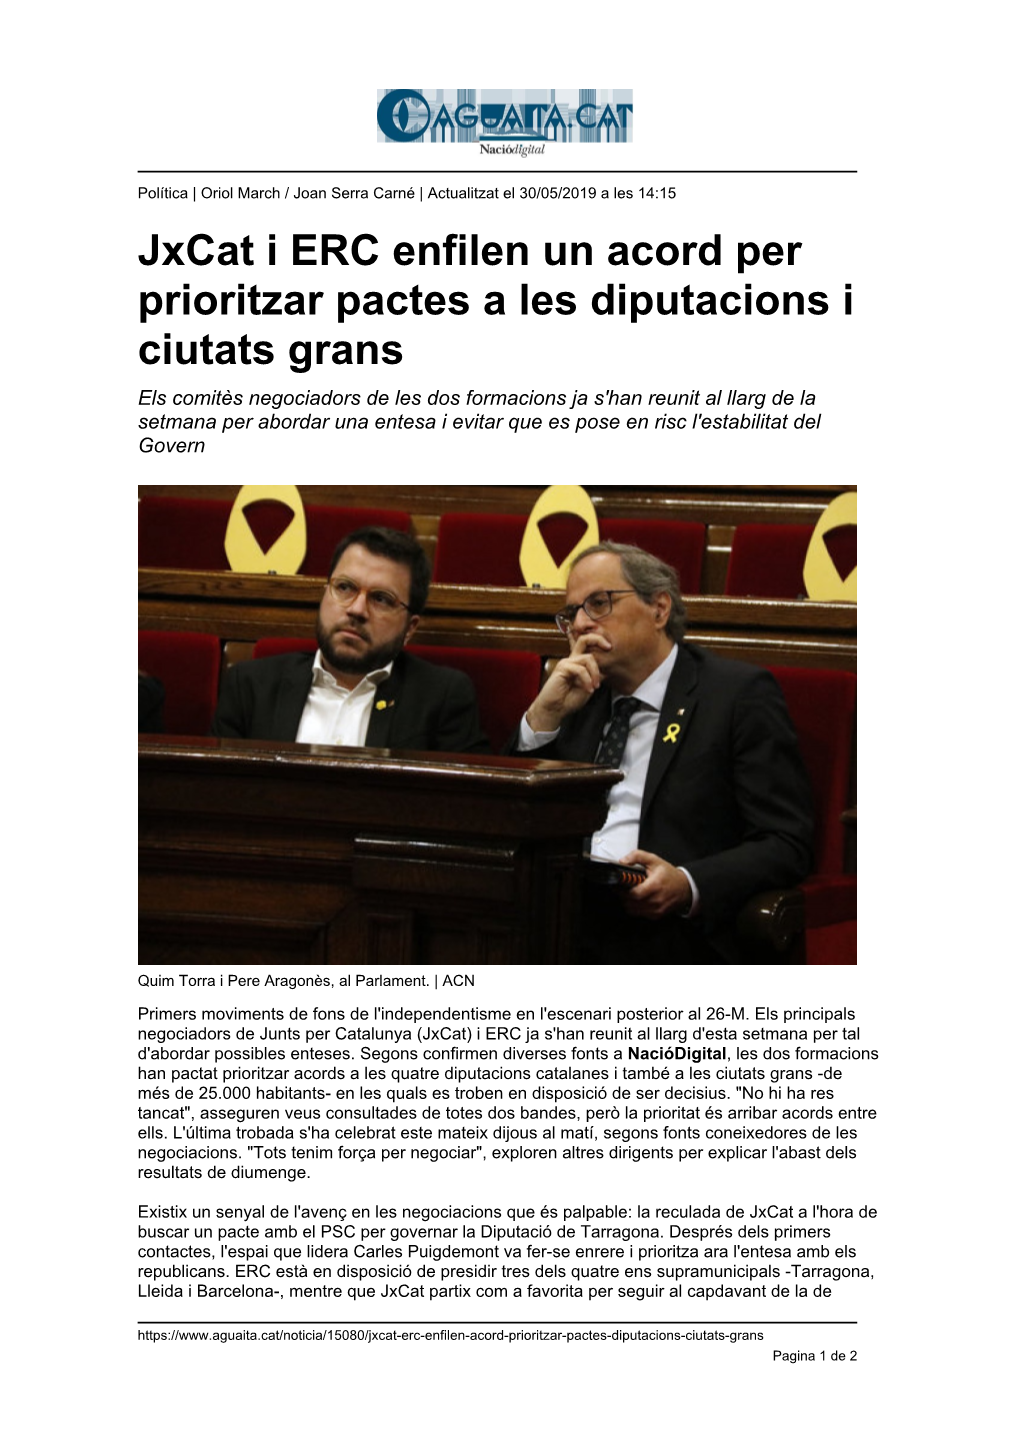 Jxcat I ERC Enfilen Un Acord Per Prioritzar Pactes a Les Diputacions I